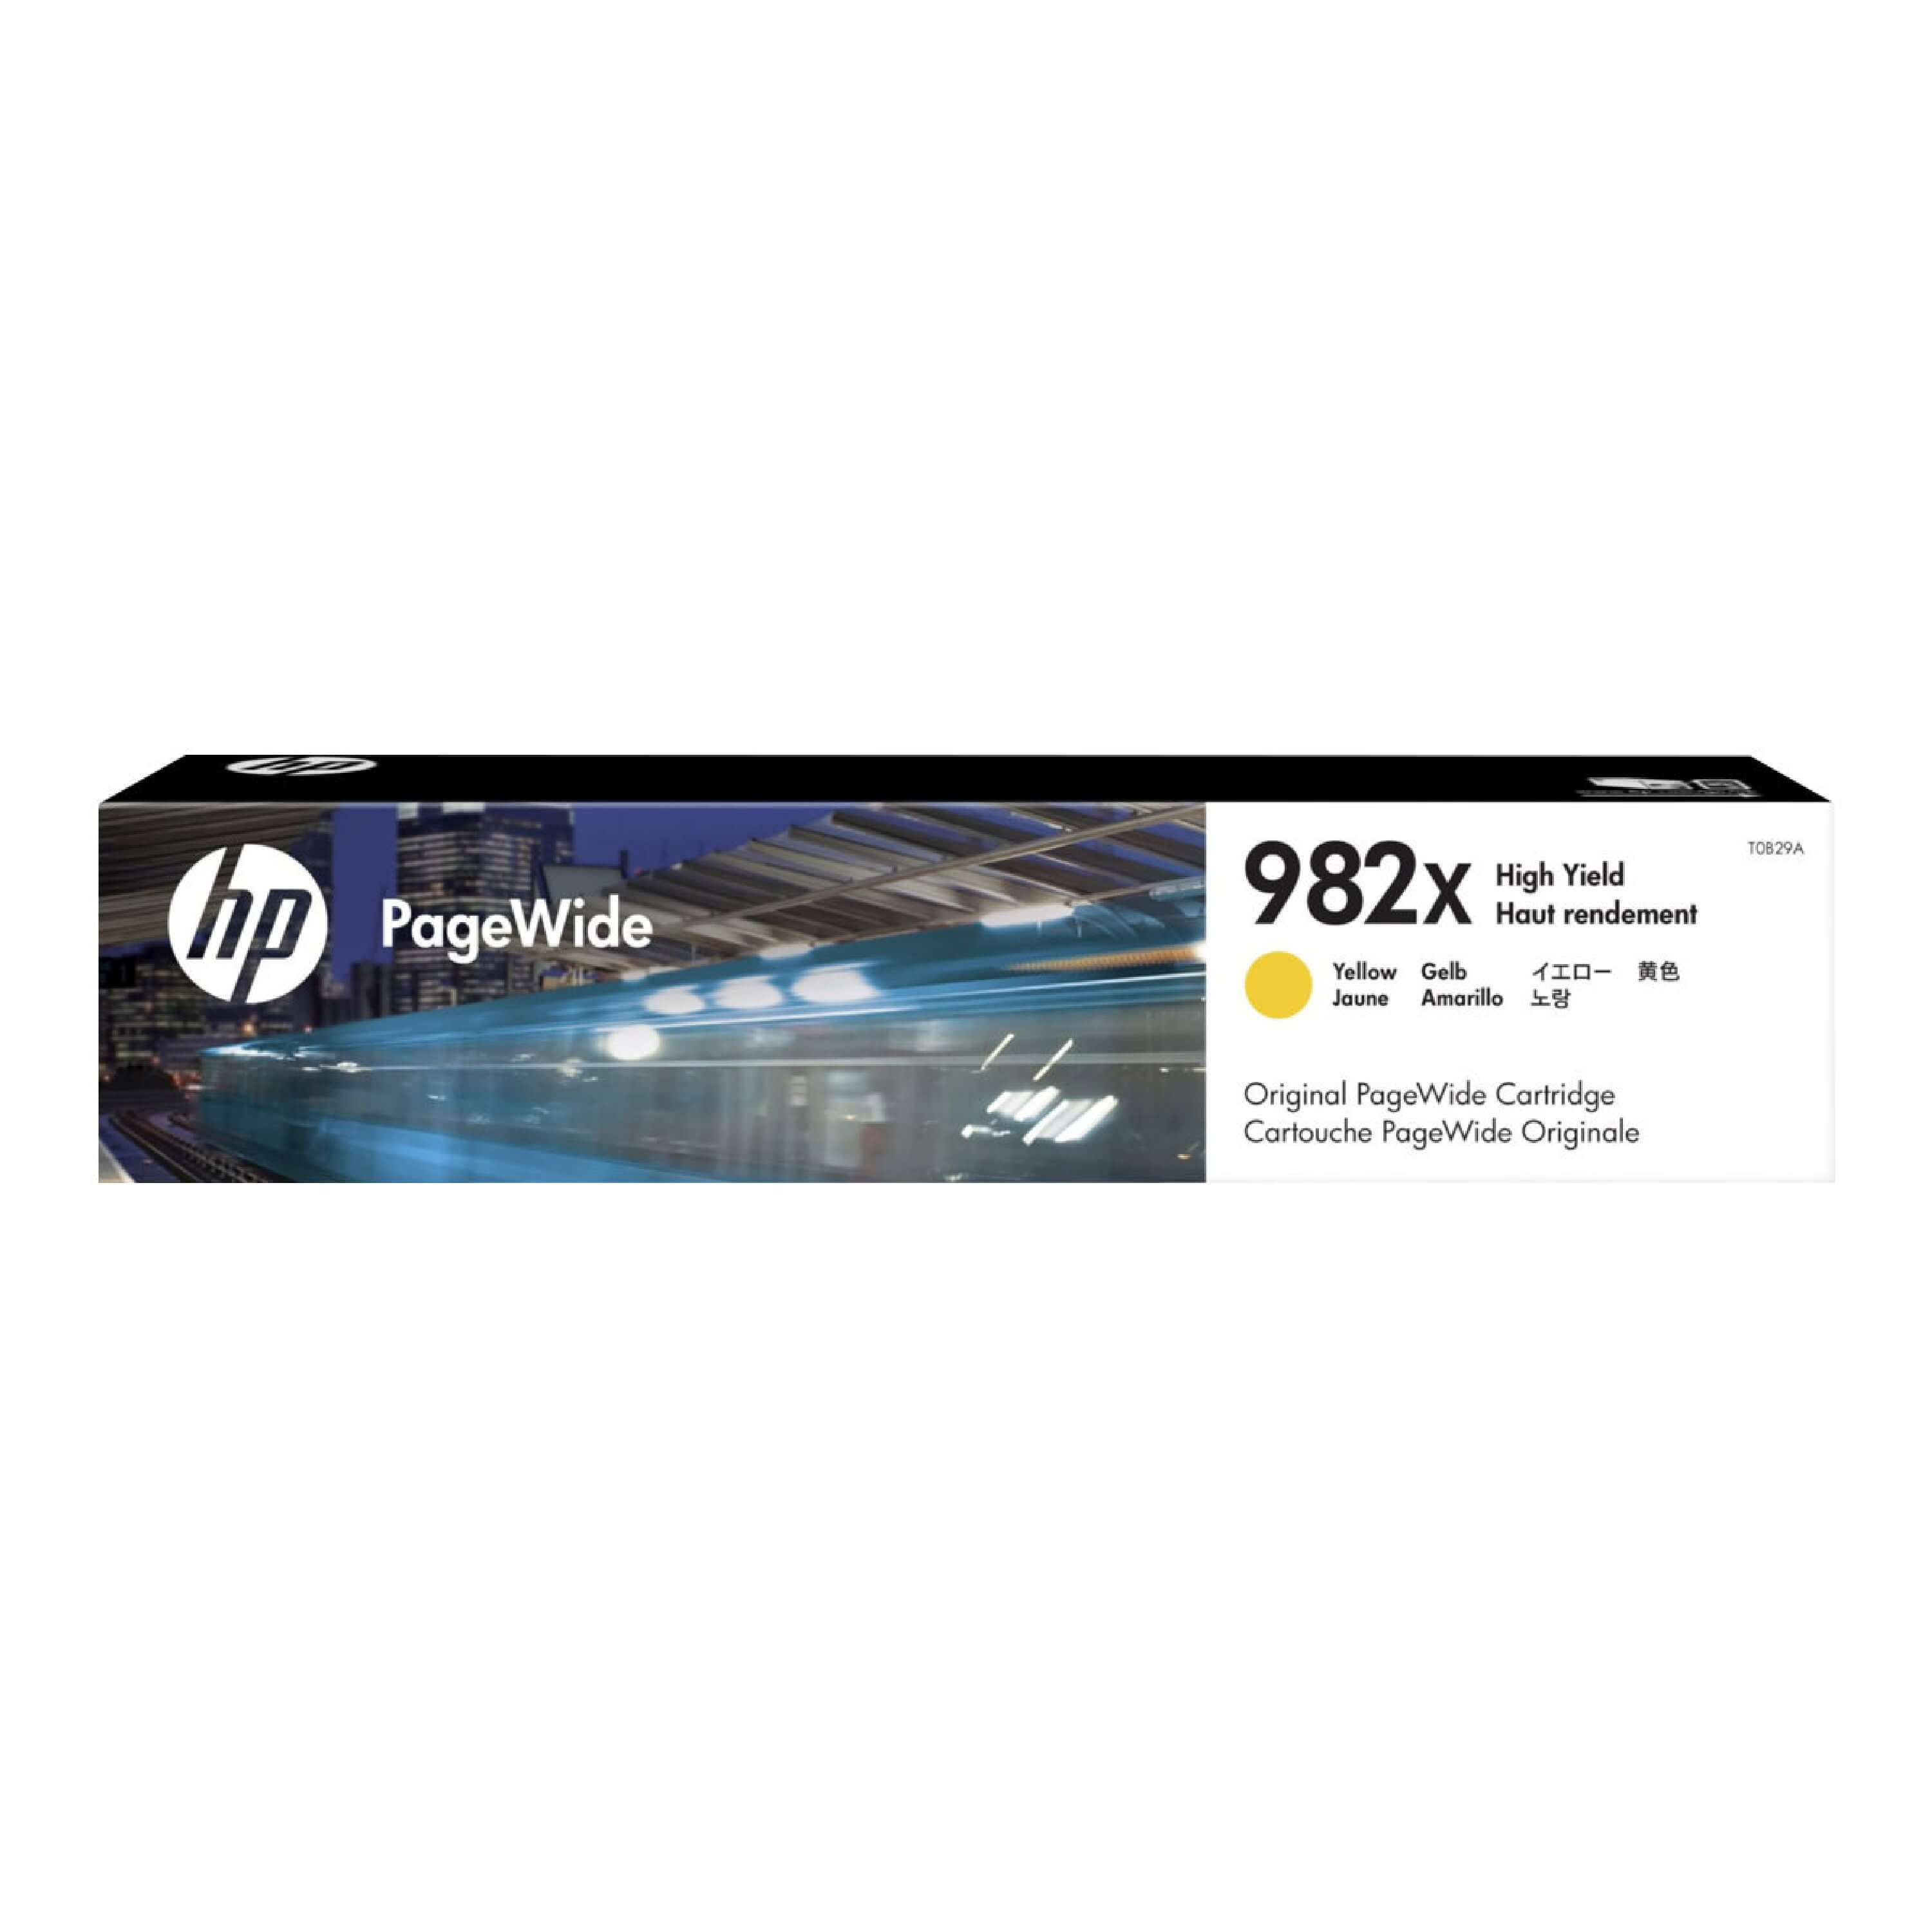 Original Druckerpatrone HP PageWide Enterprise Color MFP 780 dtx (T0B29A / 982X)